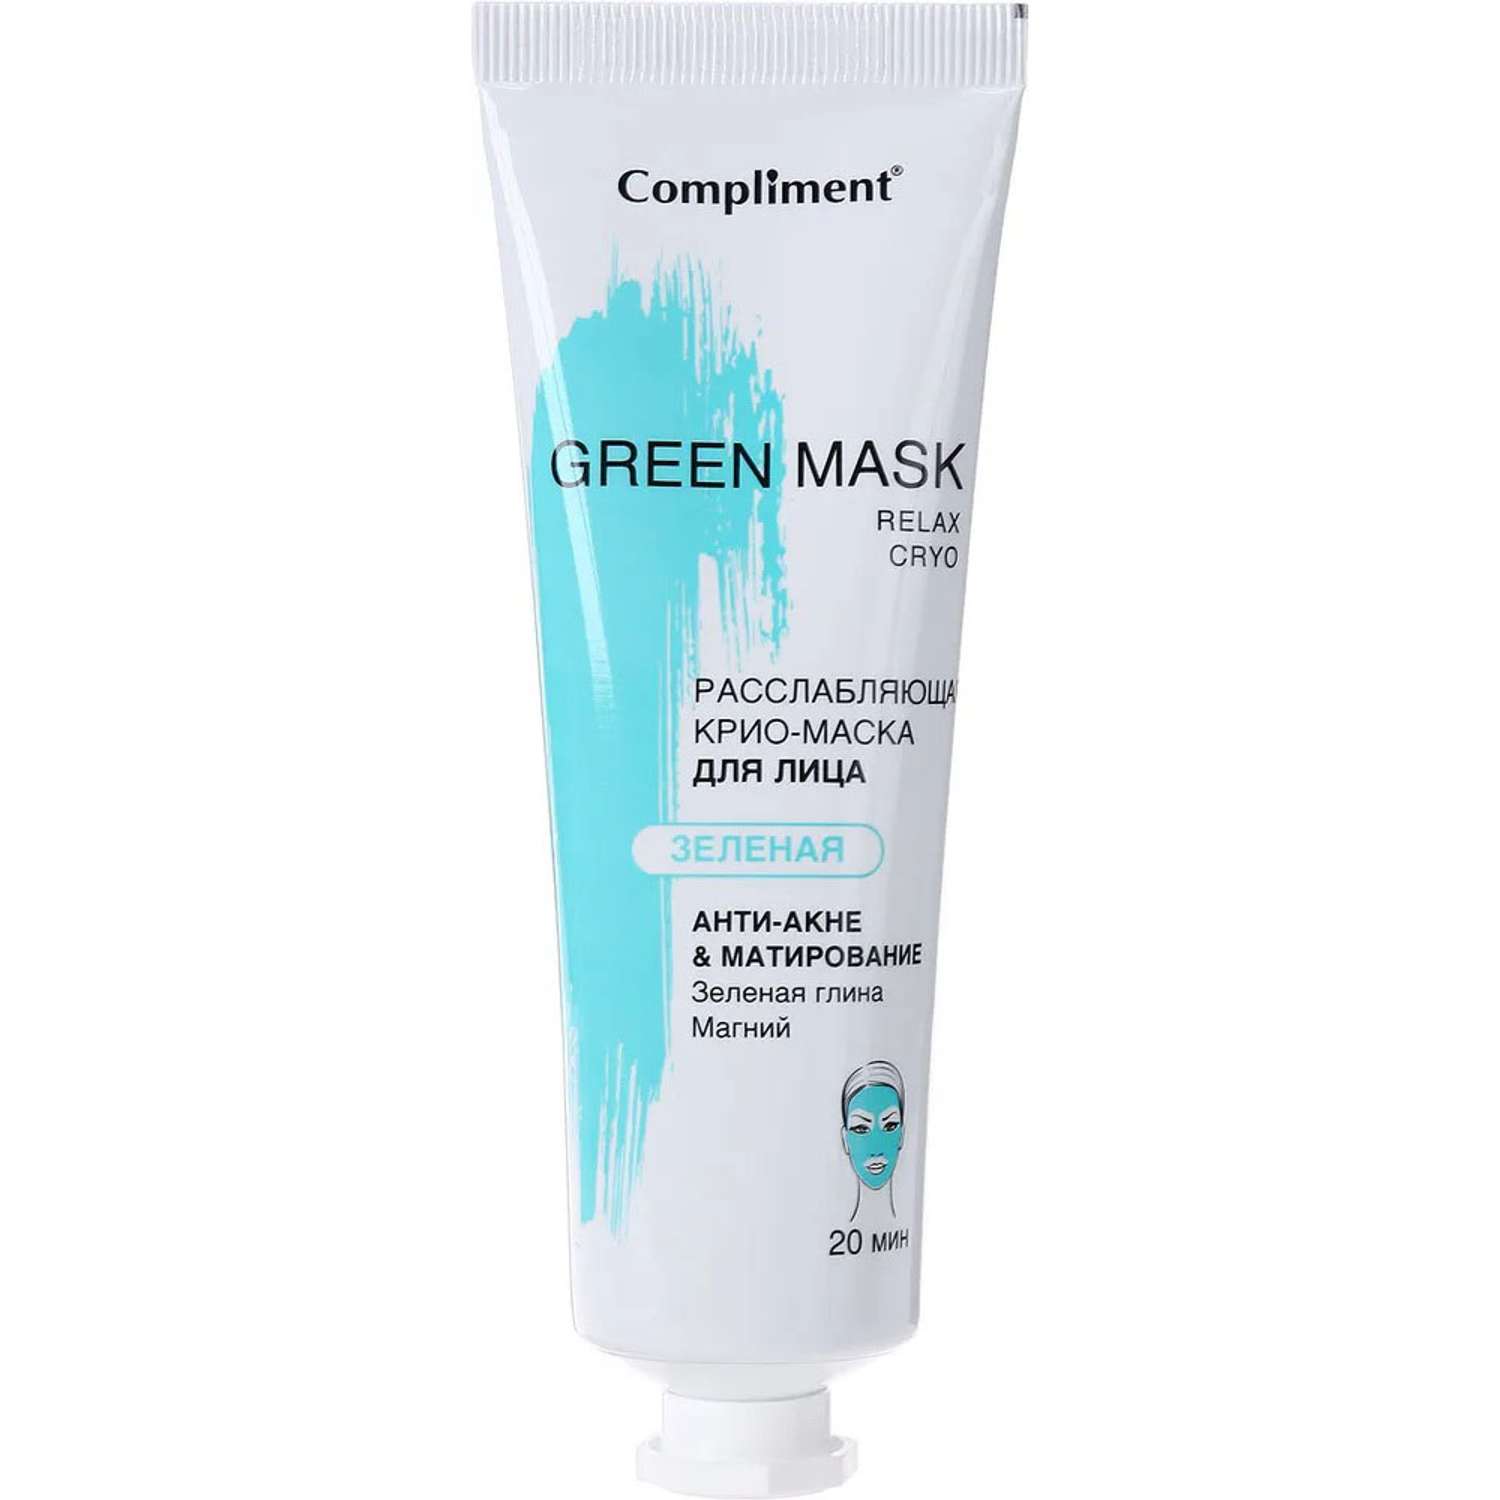 Крио-маска Compliment Green Mask Анти-акне Матирование 80 мл - фото 2